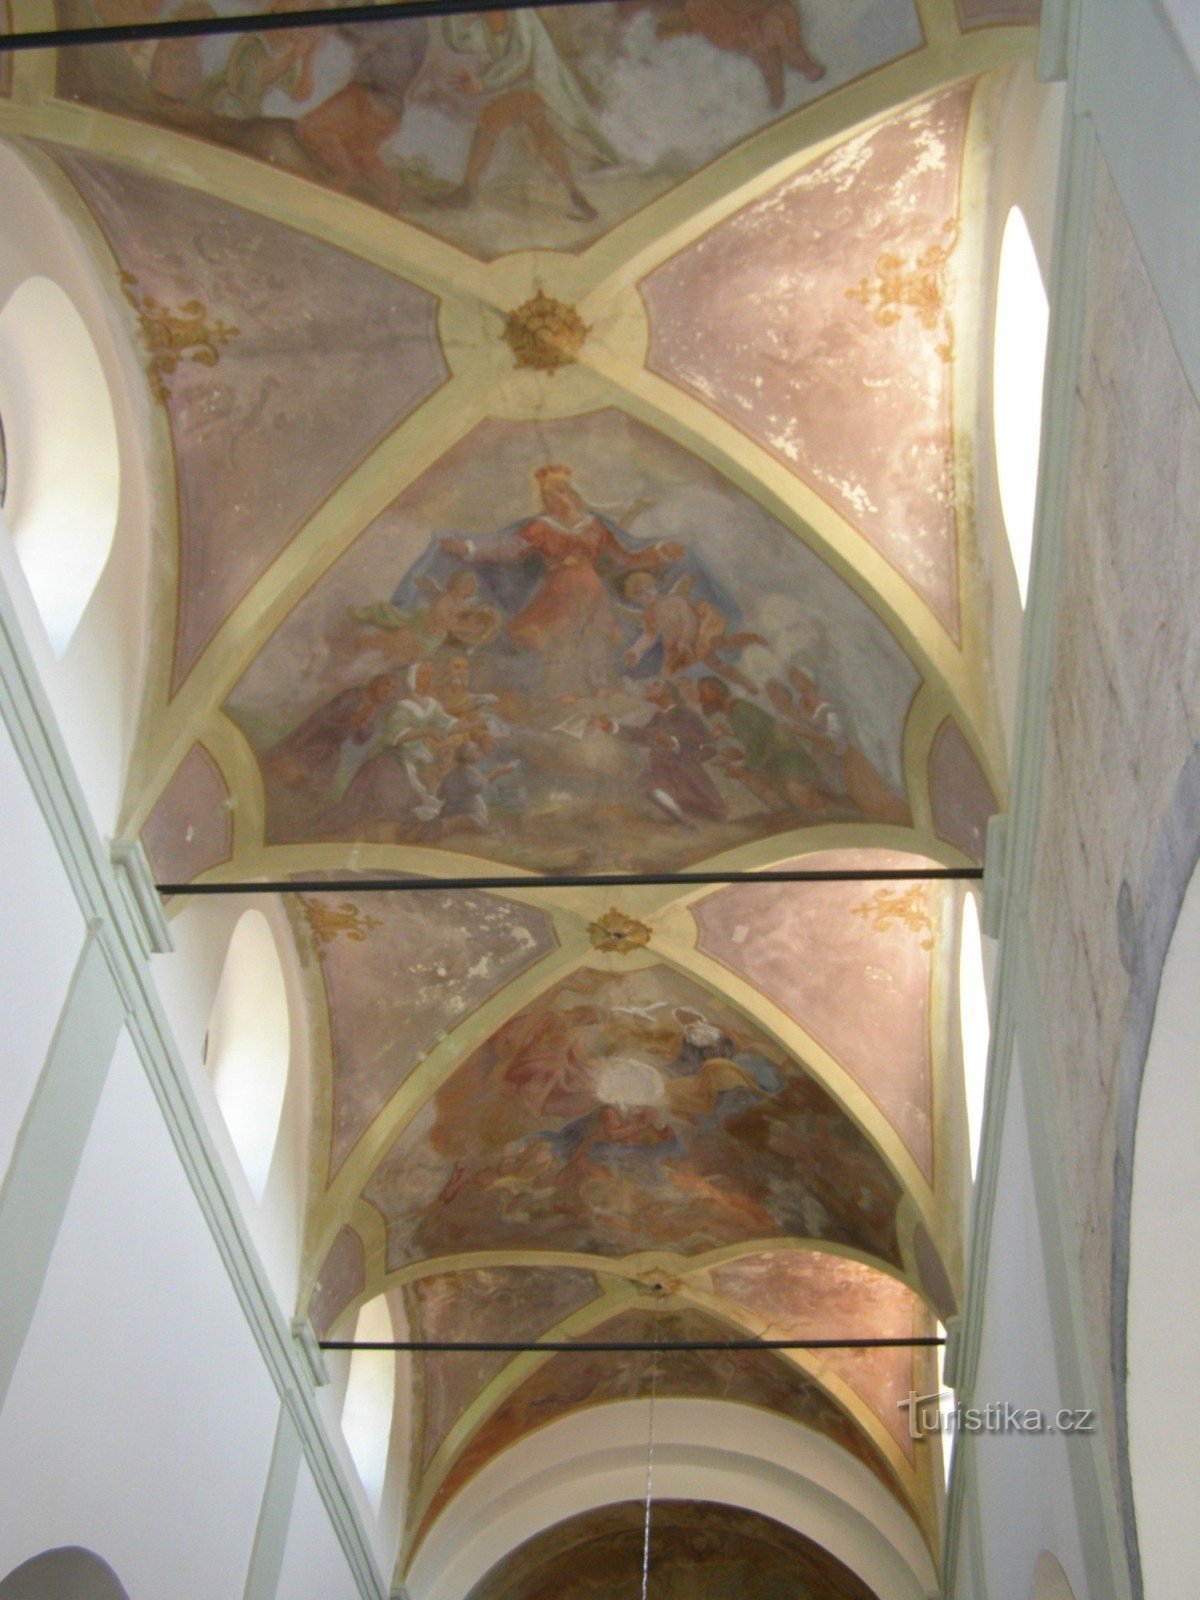 affreschi sulla volta della navata